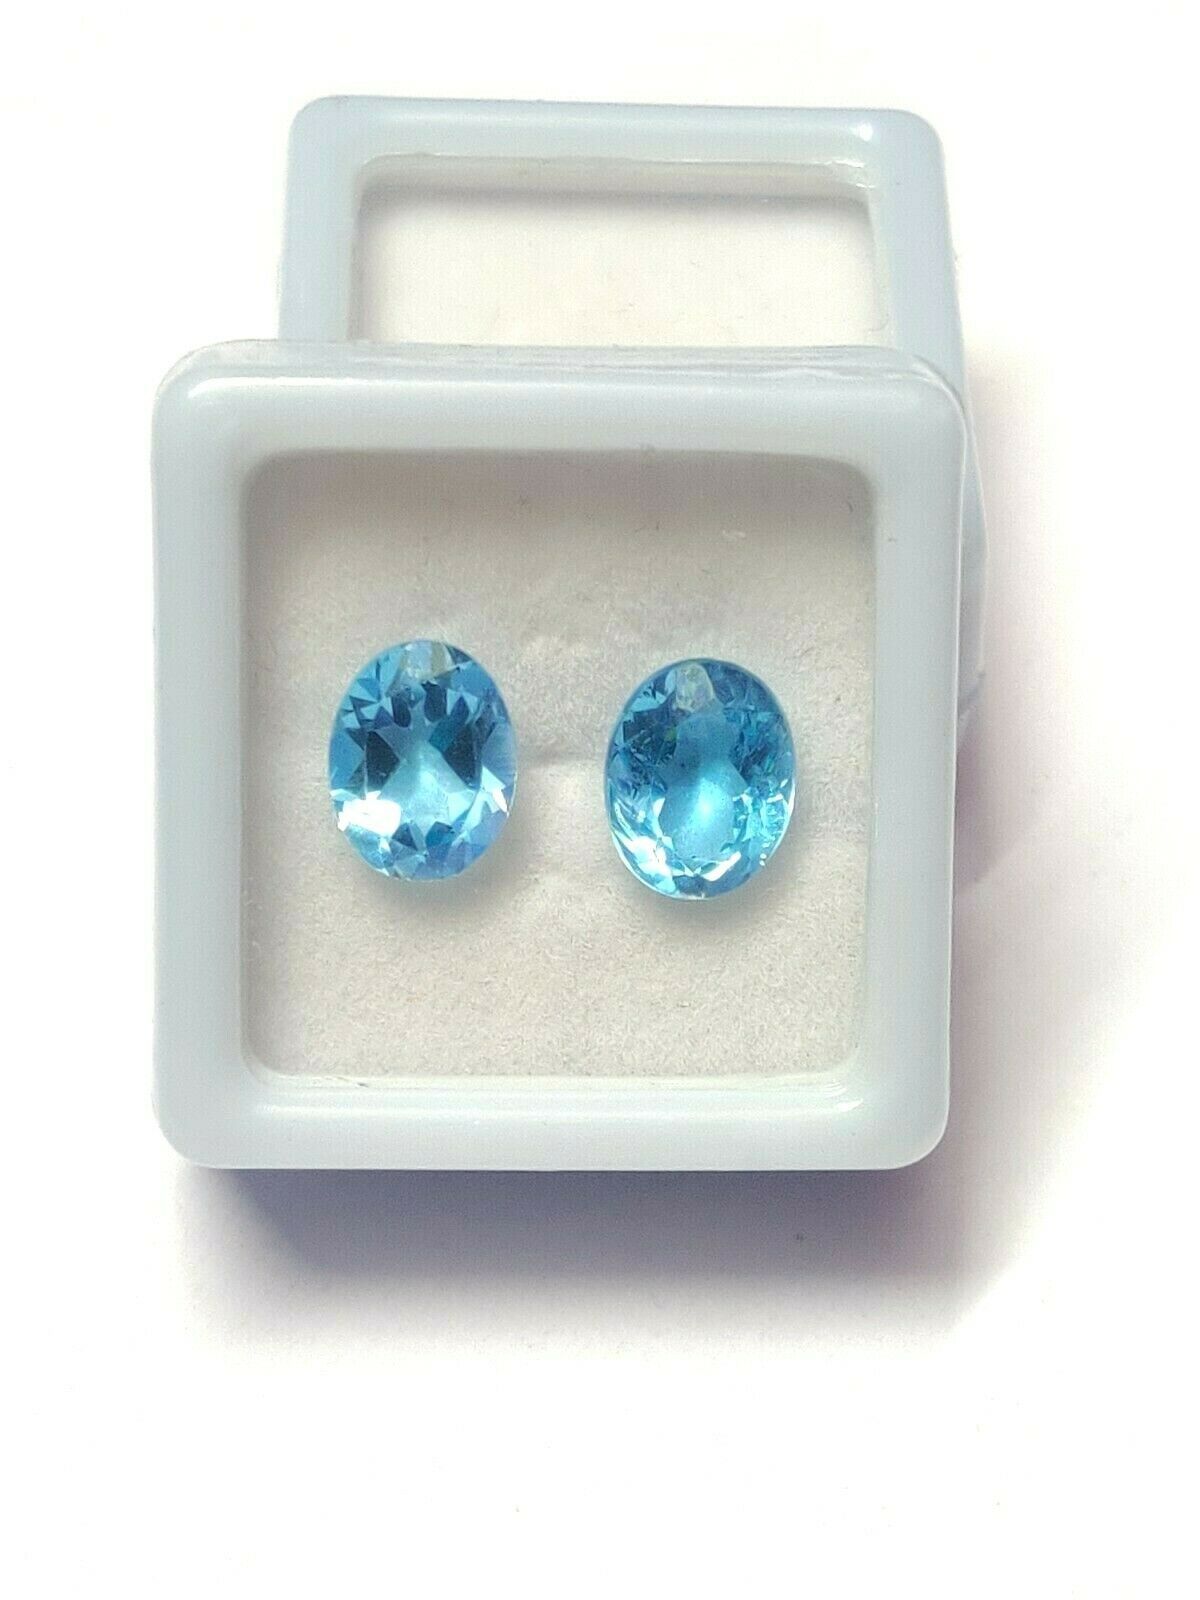 Primary image for Swiss Blue Topaz Gemstone 7x9 mm oval Cut Blue Topaz Loose Blue Topaz Stone AAA